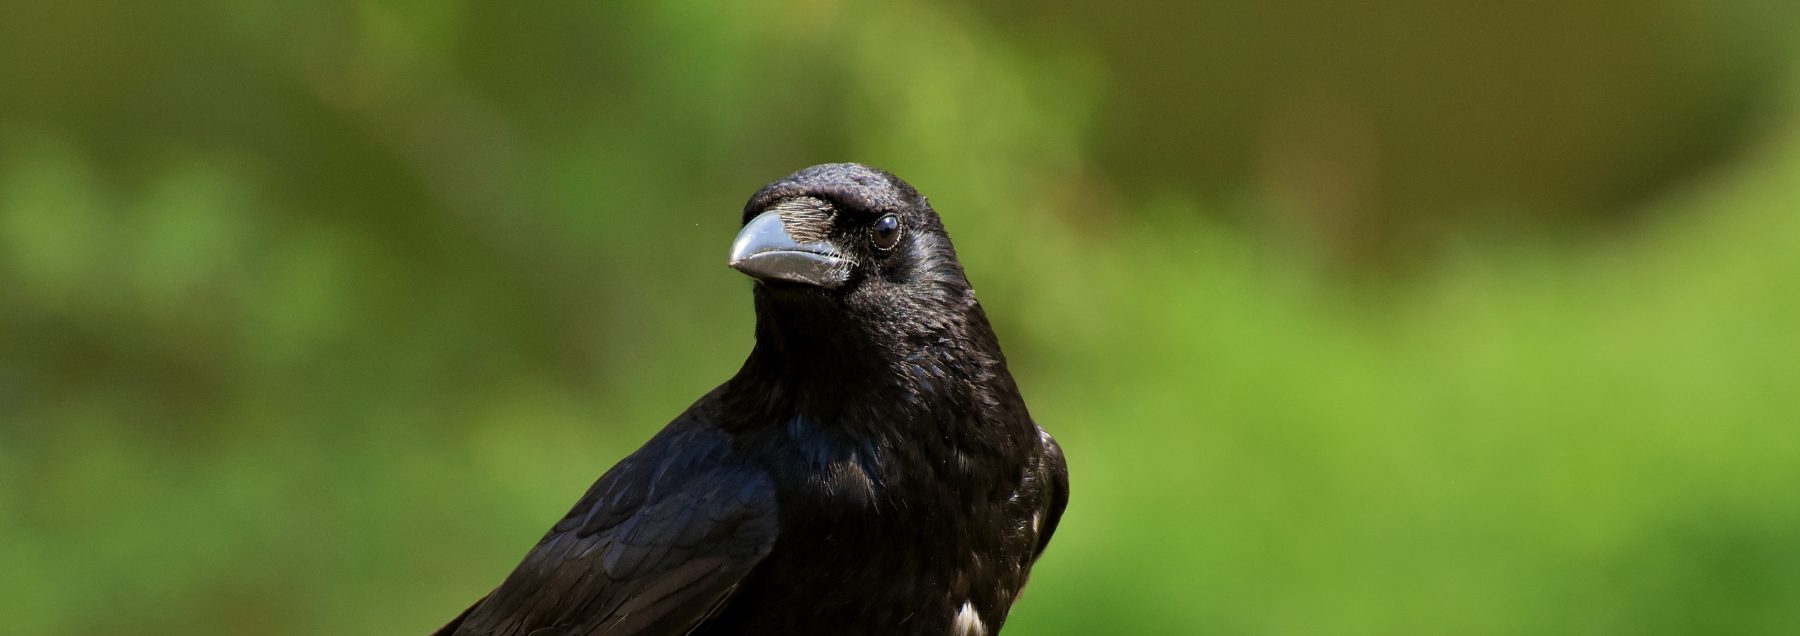 Corneille noire ou corbeau freux, quelles différences ? - La